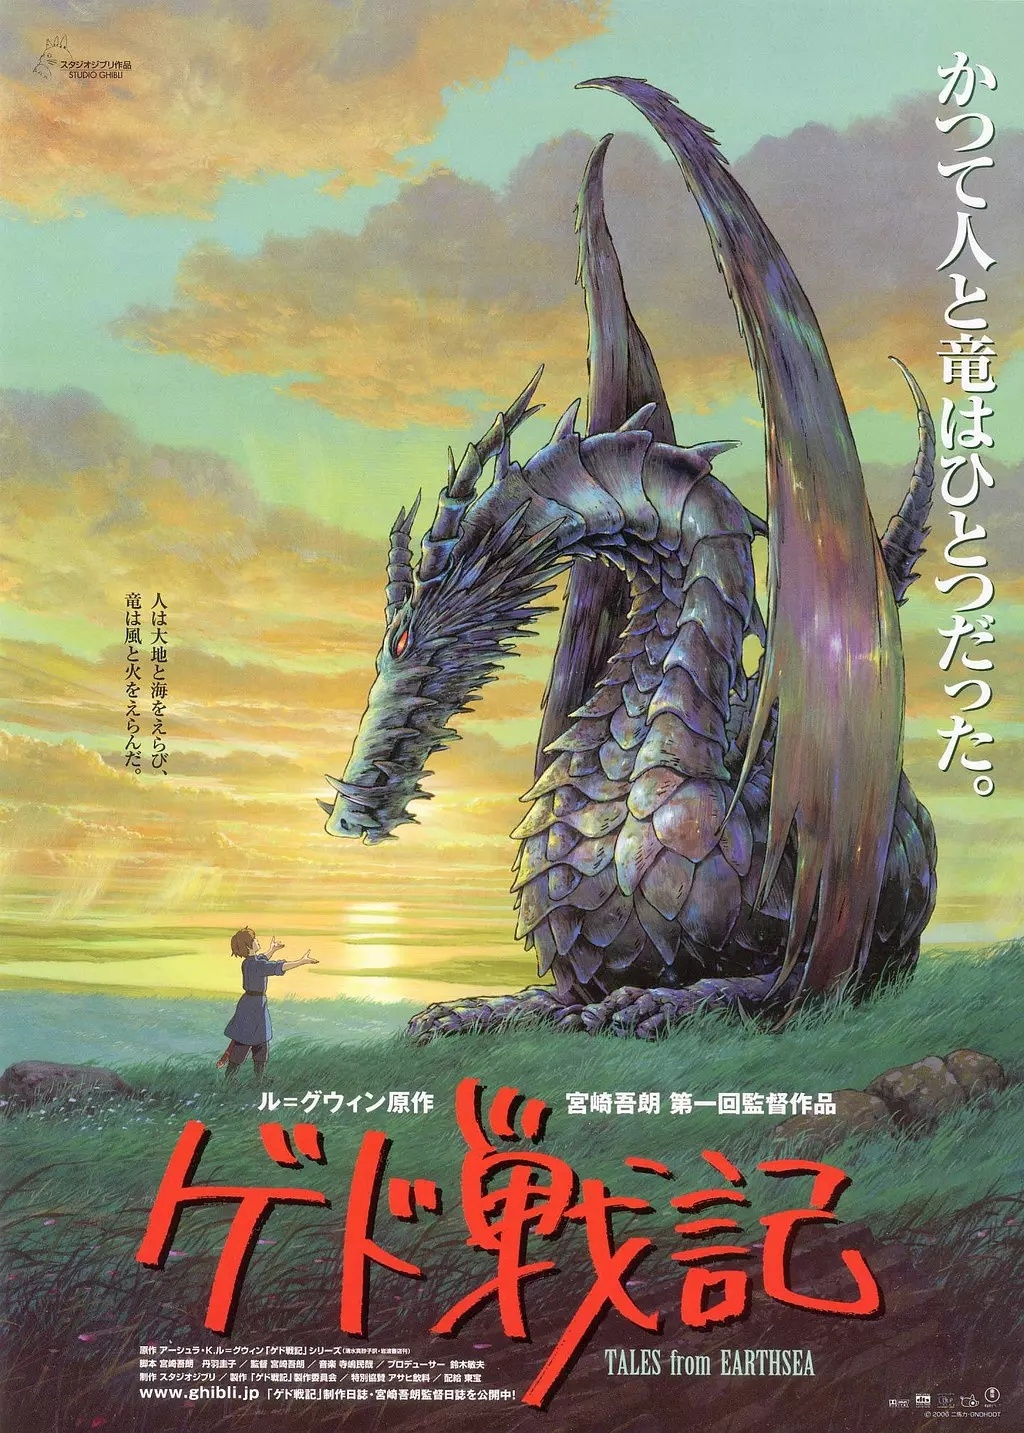 由宫崎骏之子宫崎吾朗改编的动画《地海战记》，2006年在日本上映，但口碑不佳